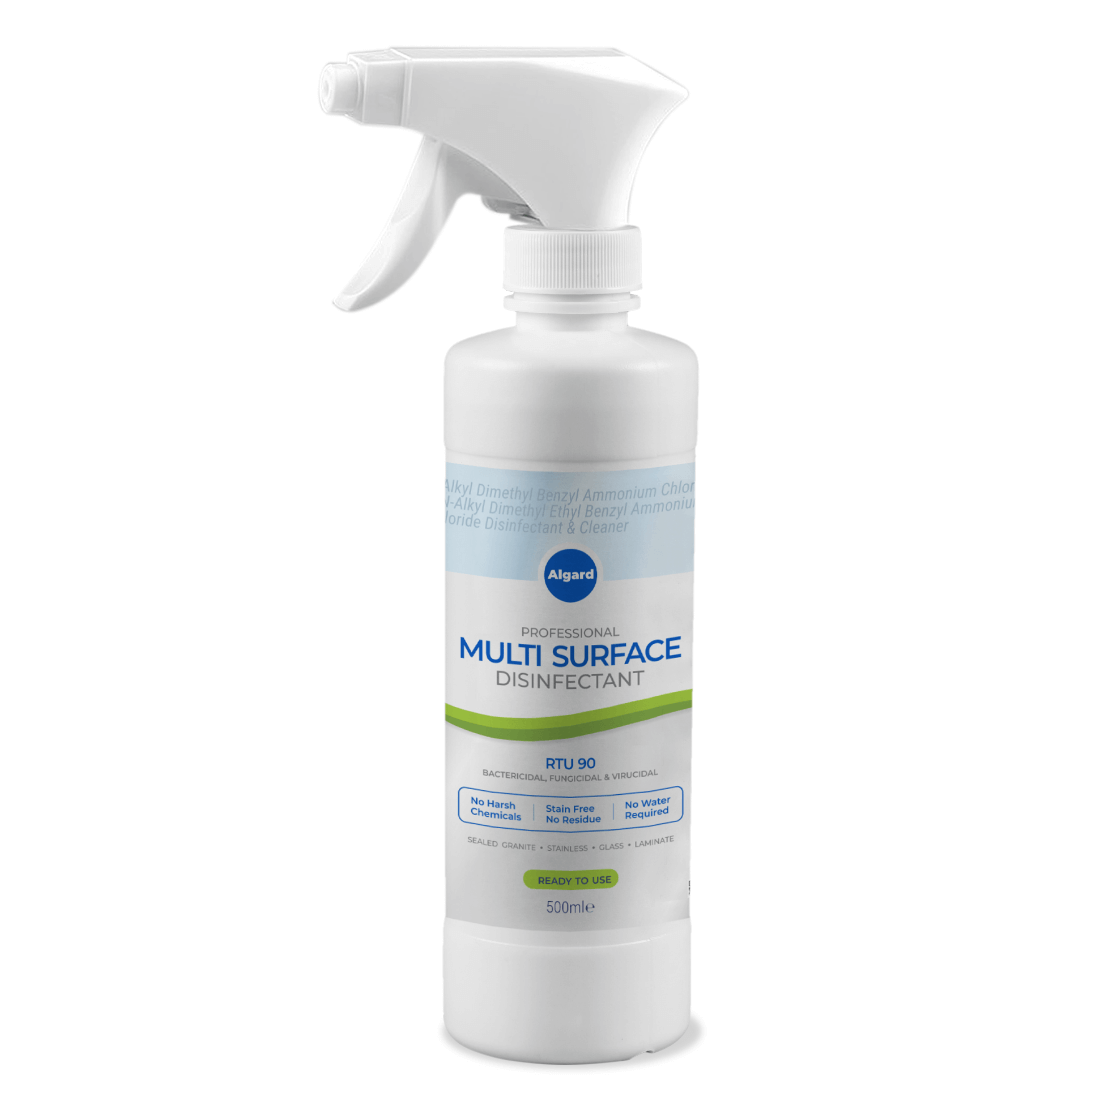 Algard RTU-90 Professional Multi Surface Disinfectant Cleaner